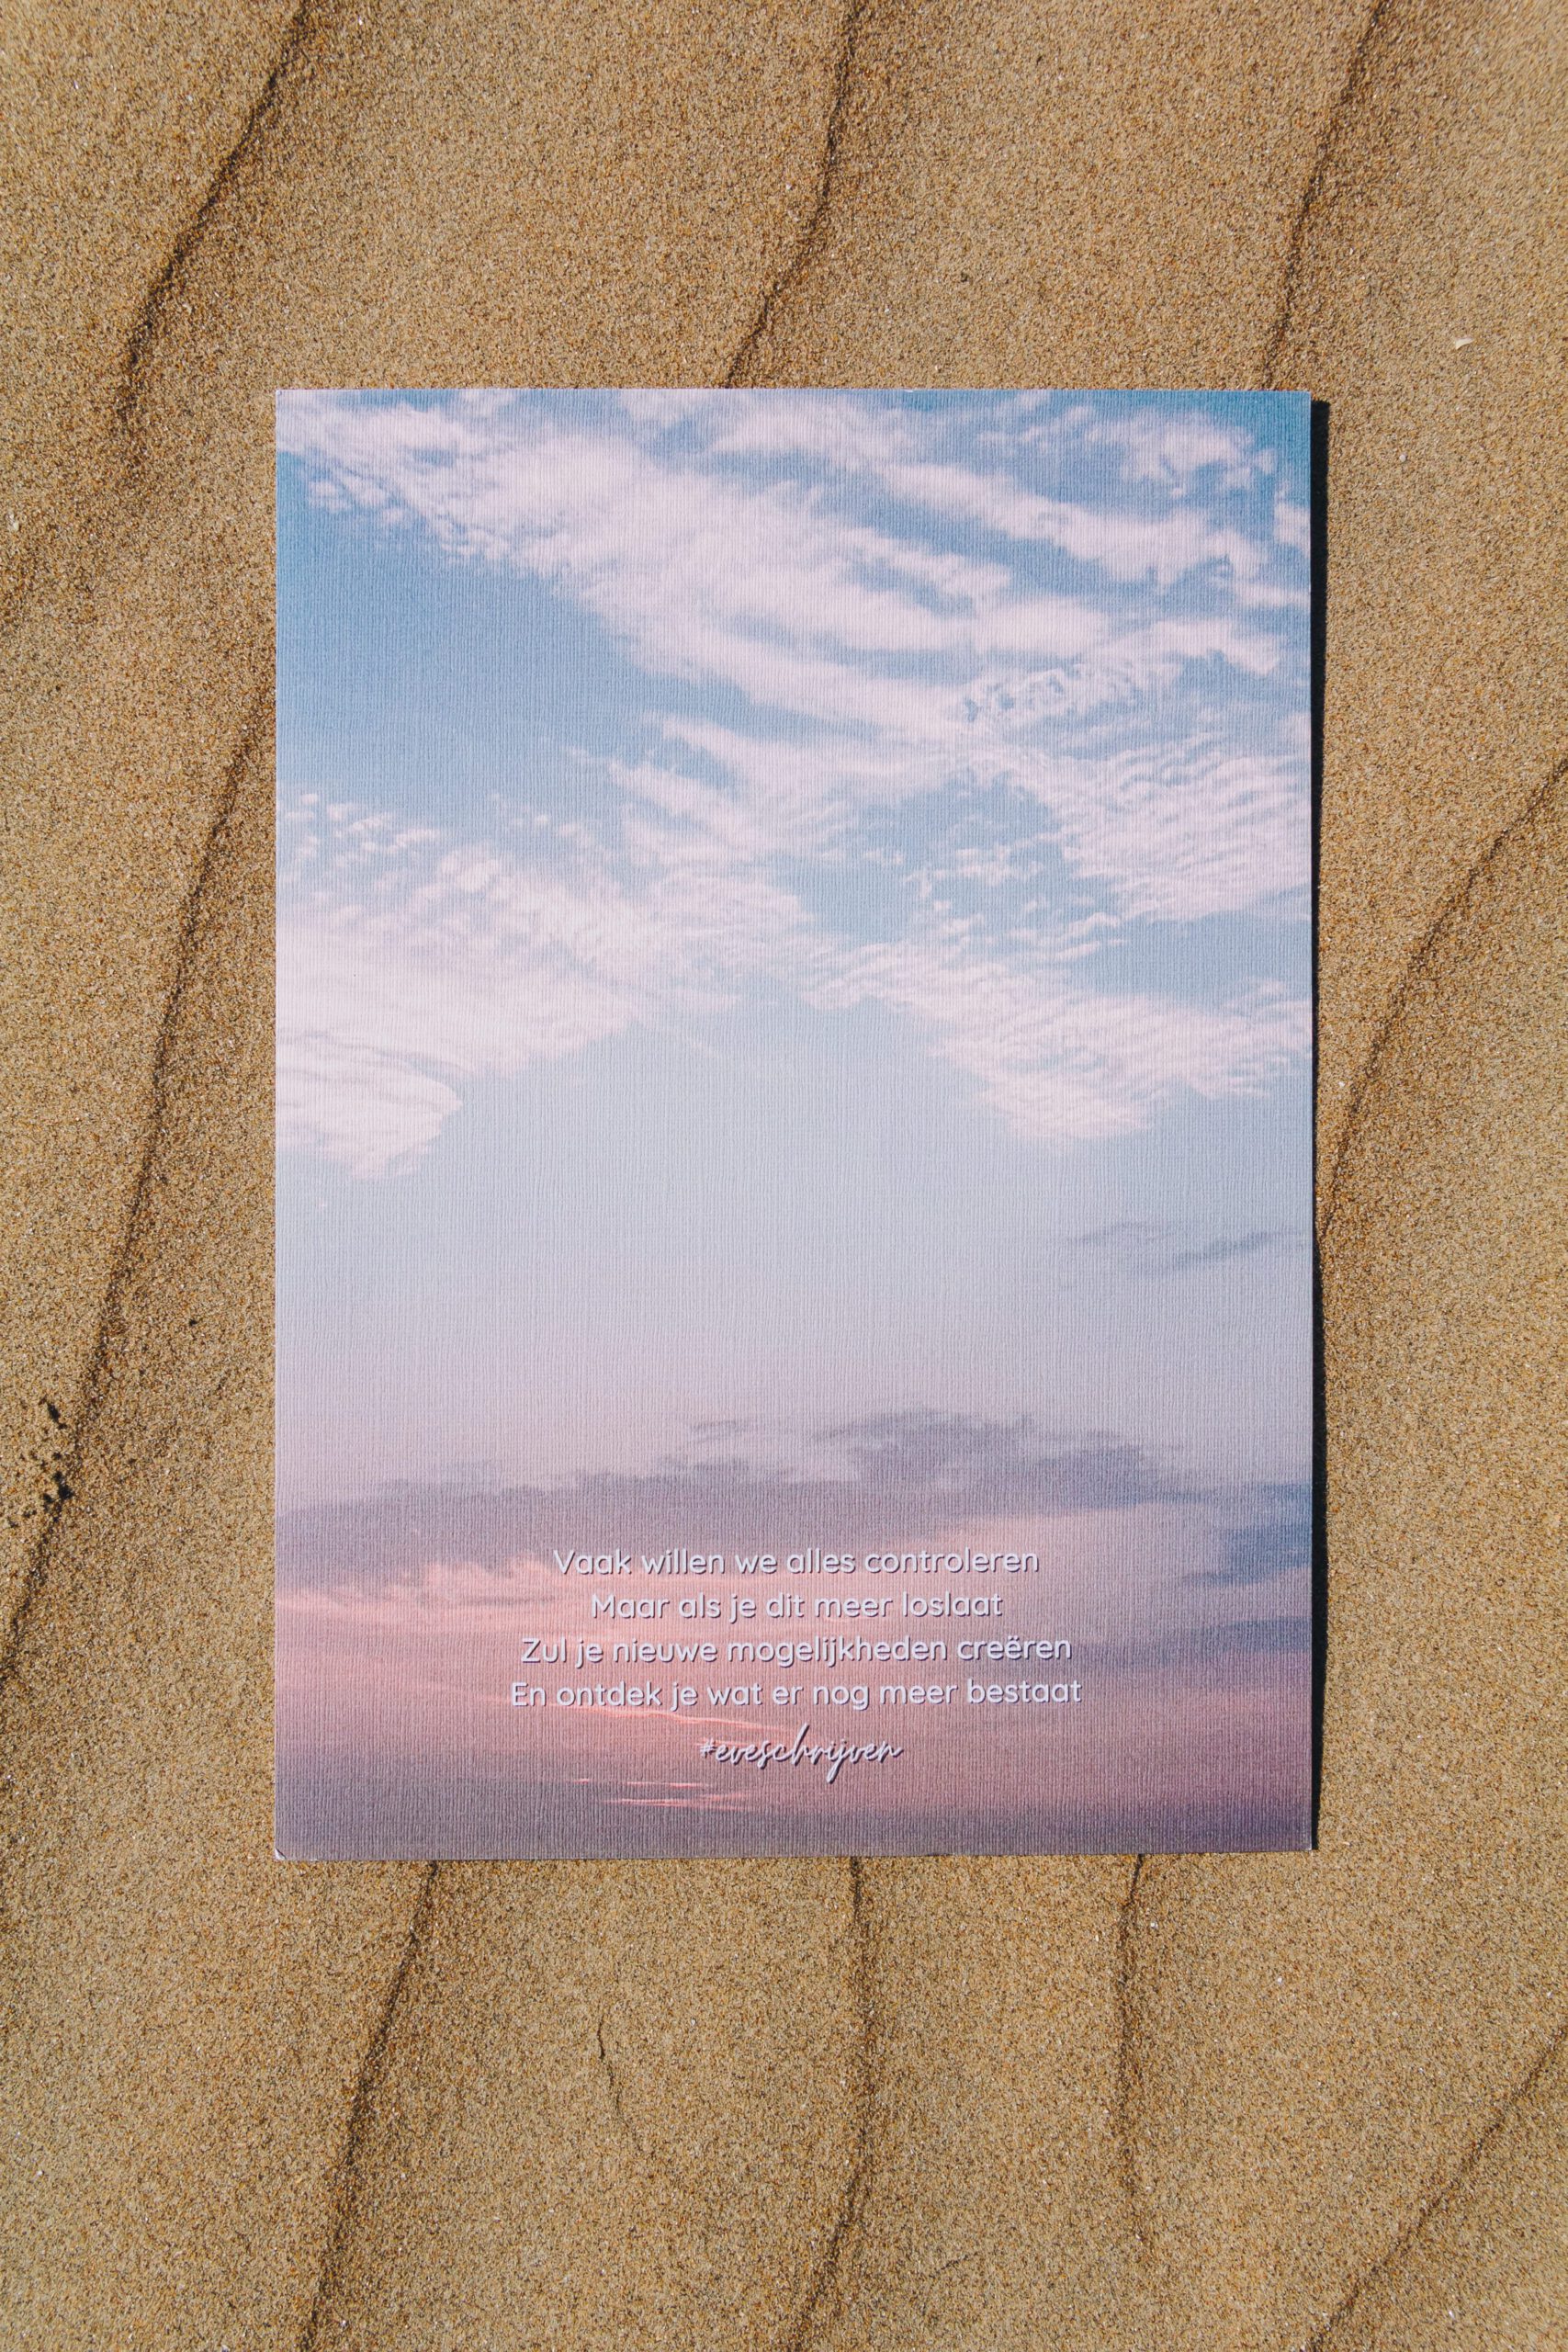 Gedichtje over de zee gefotografeerd op het strand